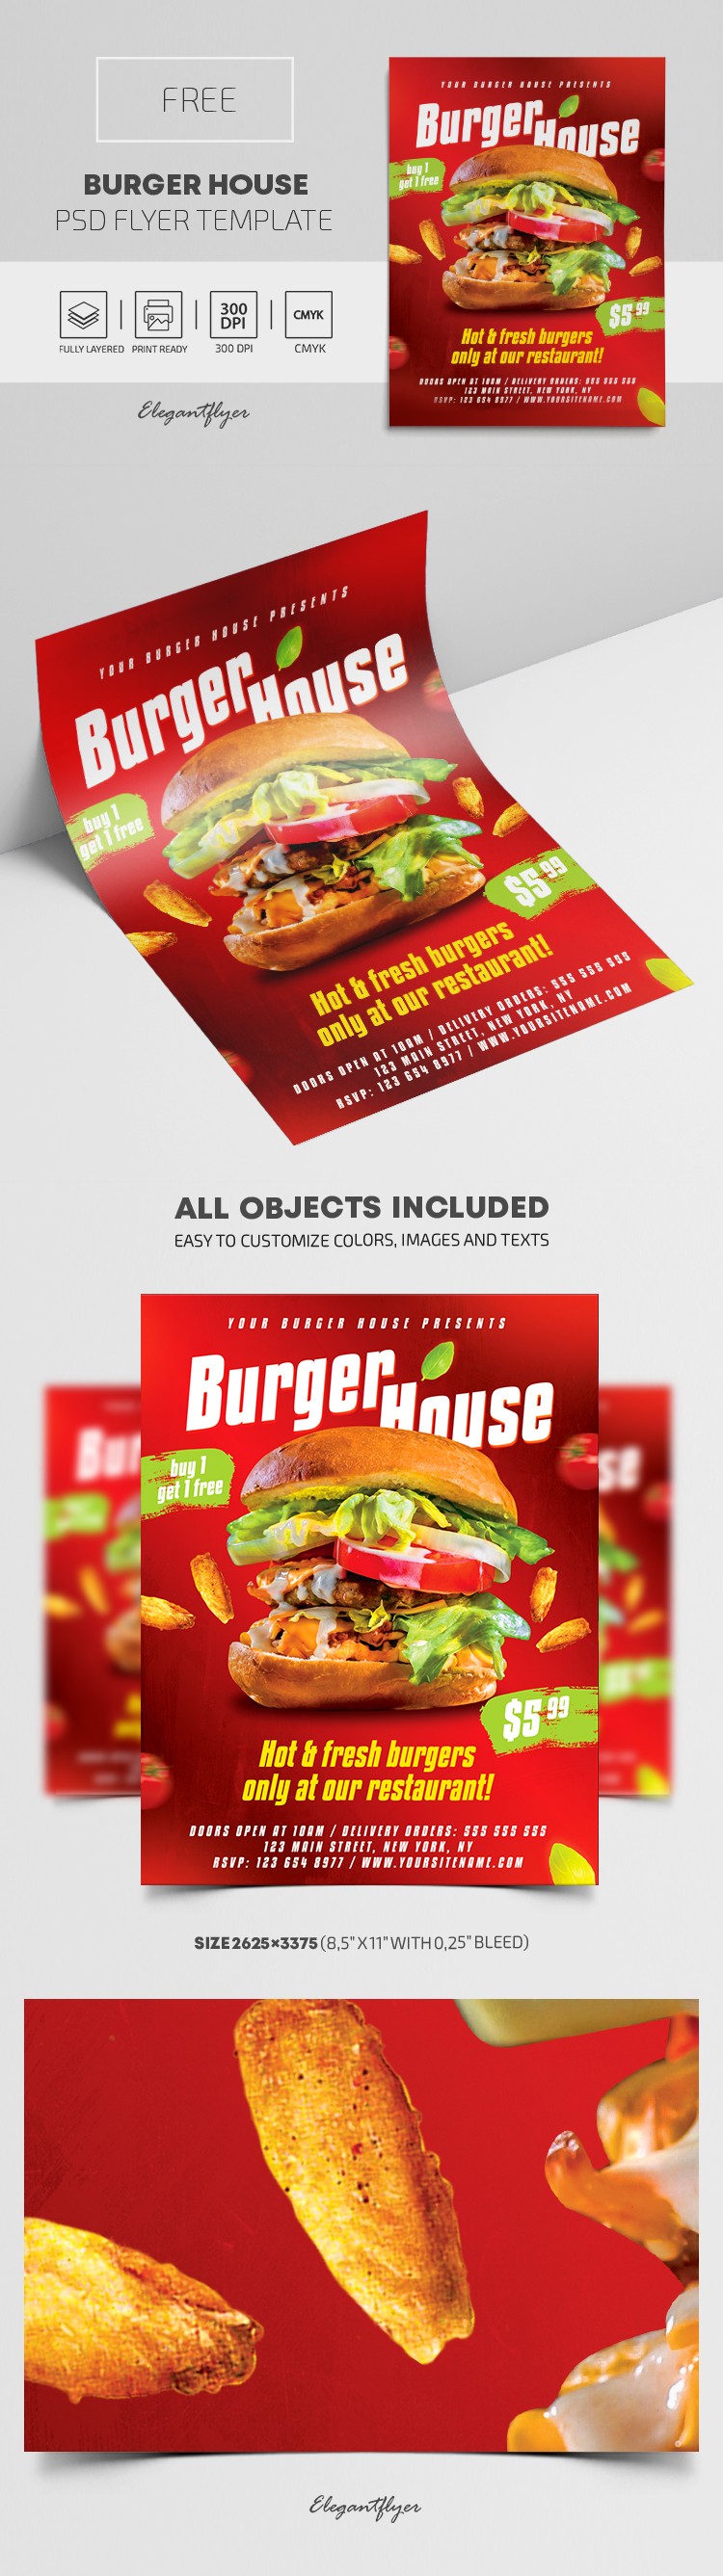 Burger House Flyer by ElegantFlyer